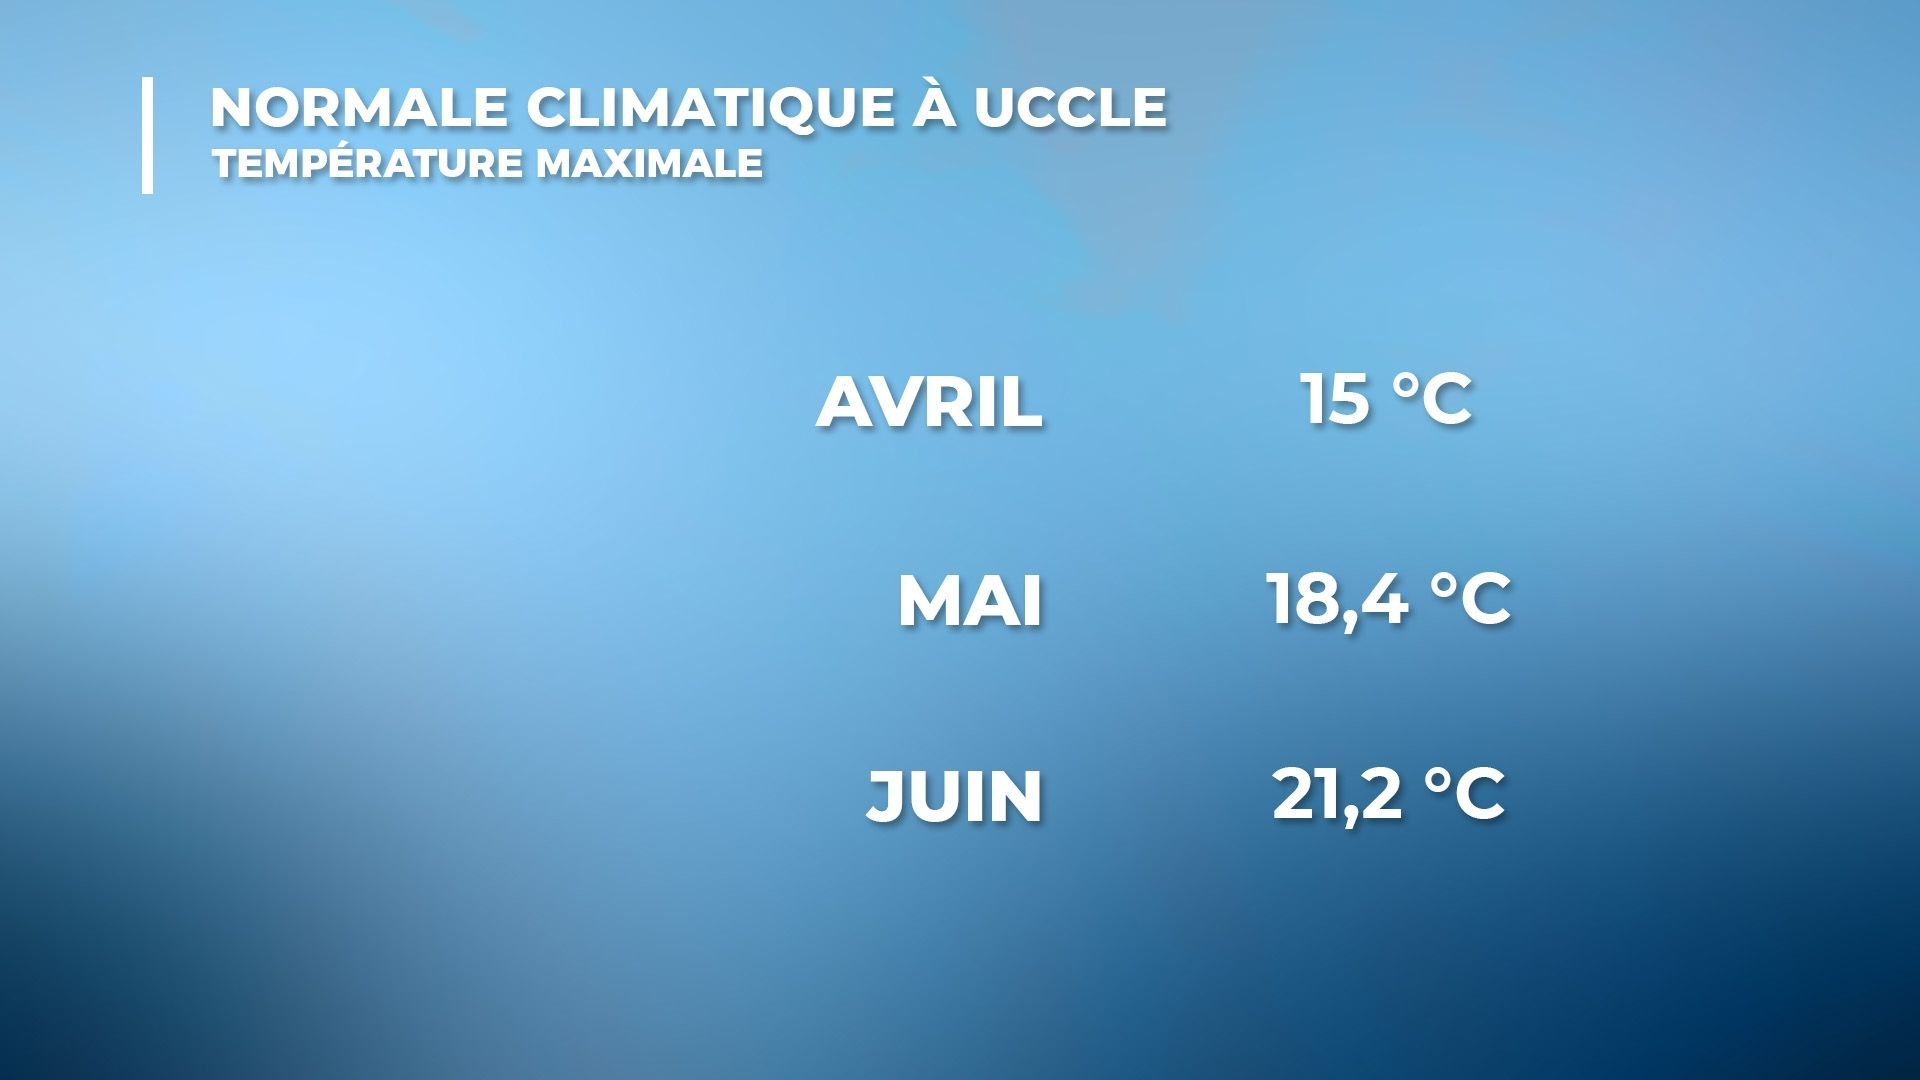 Valeurs des normales climatiques à Uccle pour la température maximale 